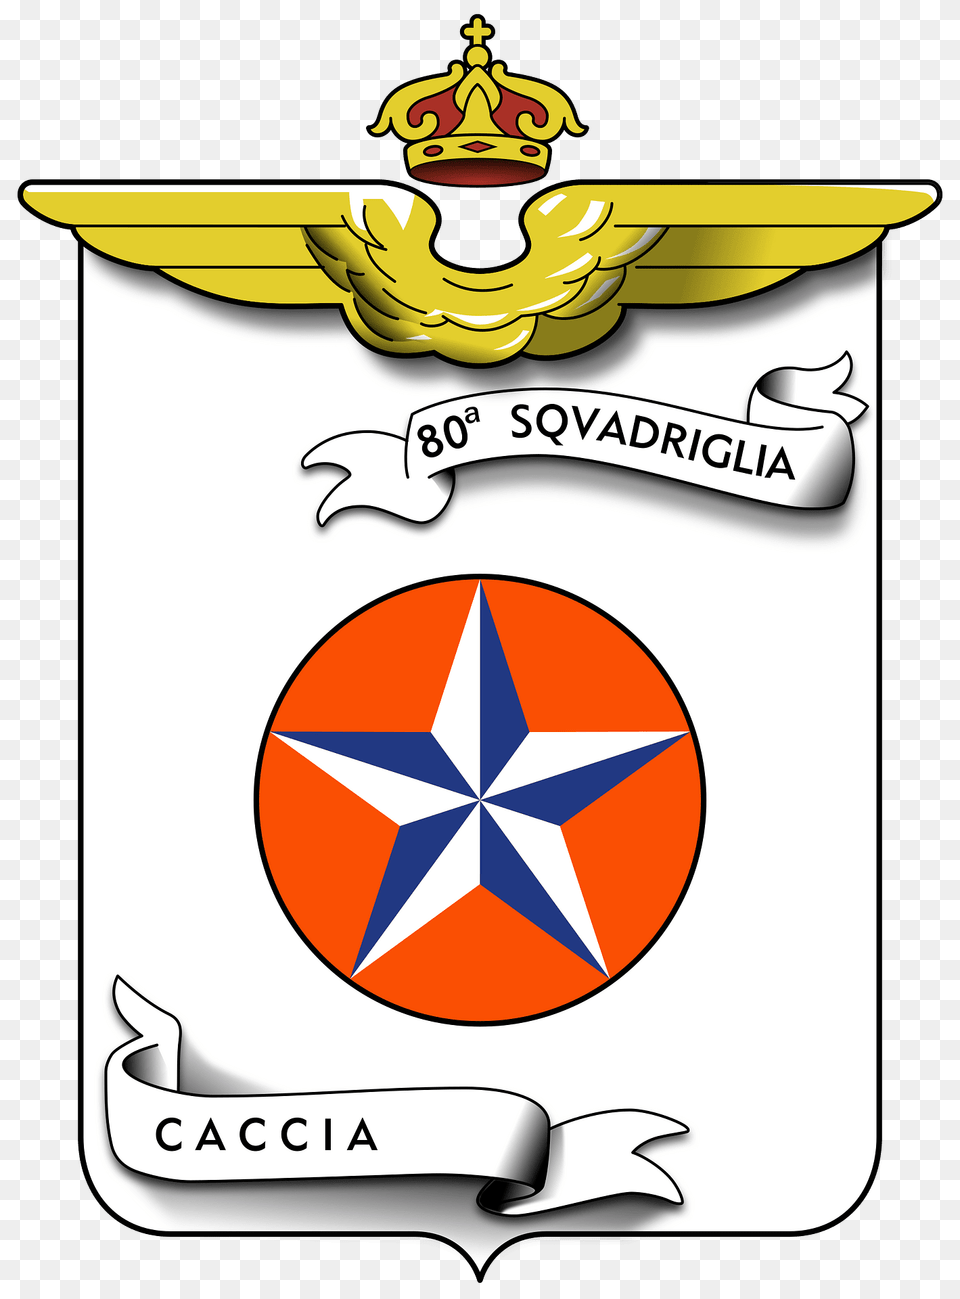 Coa 80 Squadriglia Caccia Clipart, Symbol, Logo, Emblem Free Png